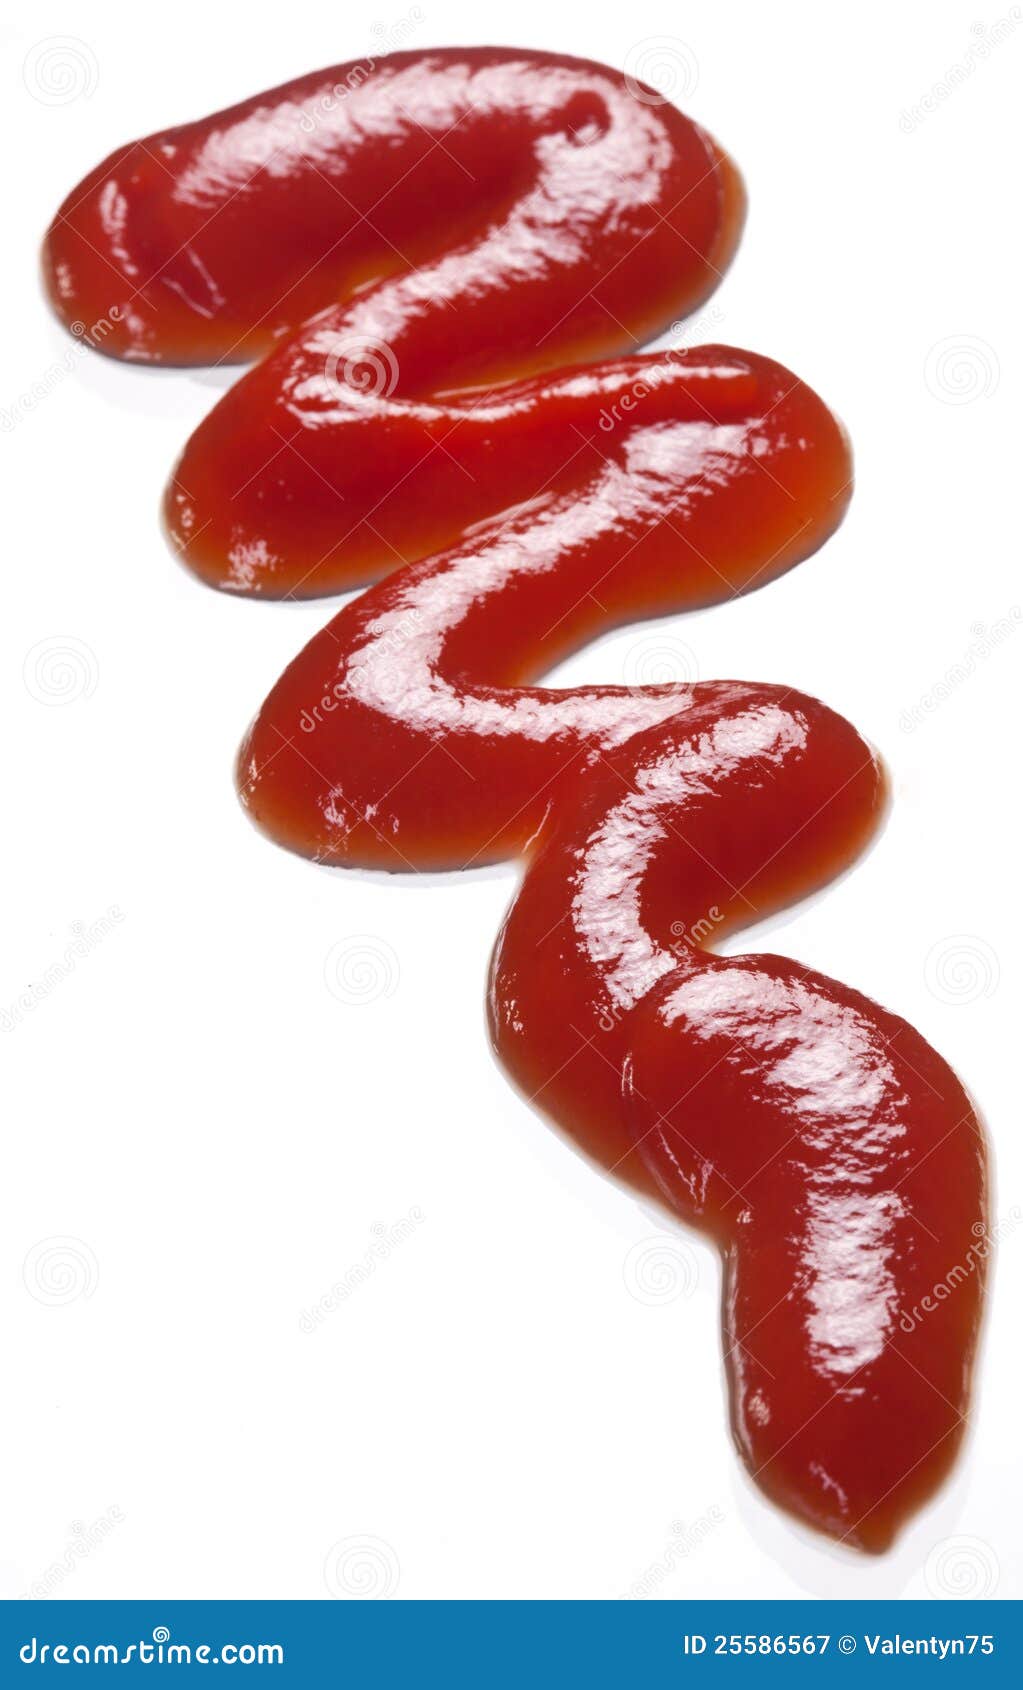 ketchup portion